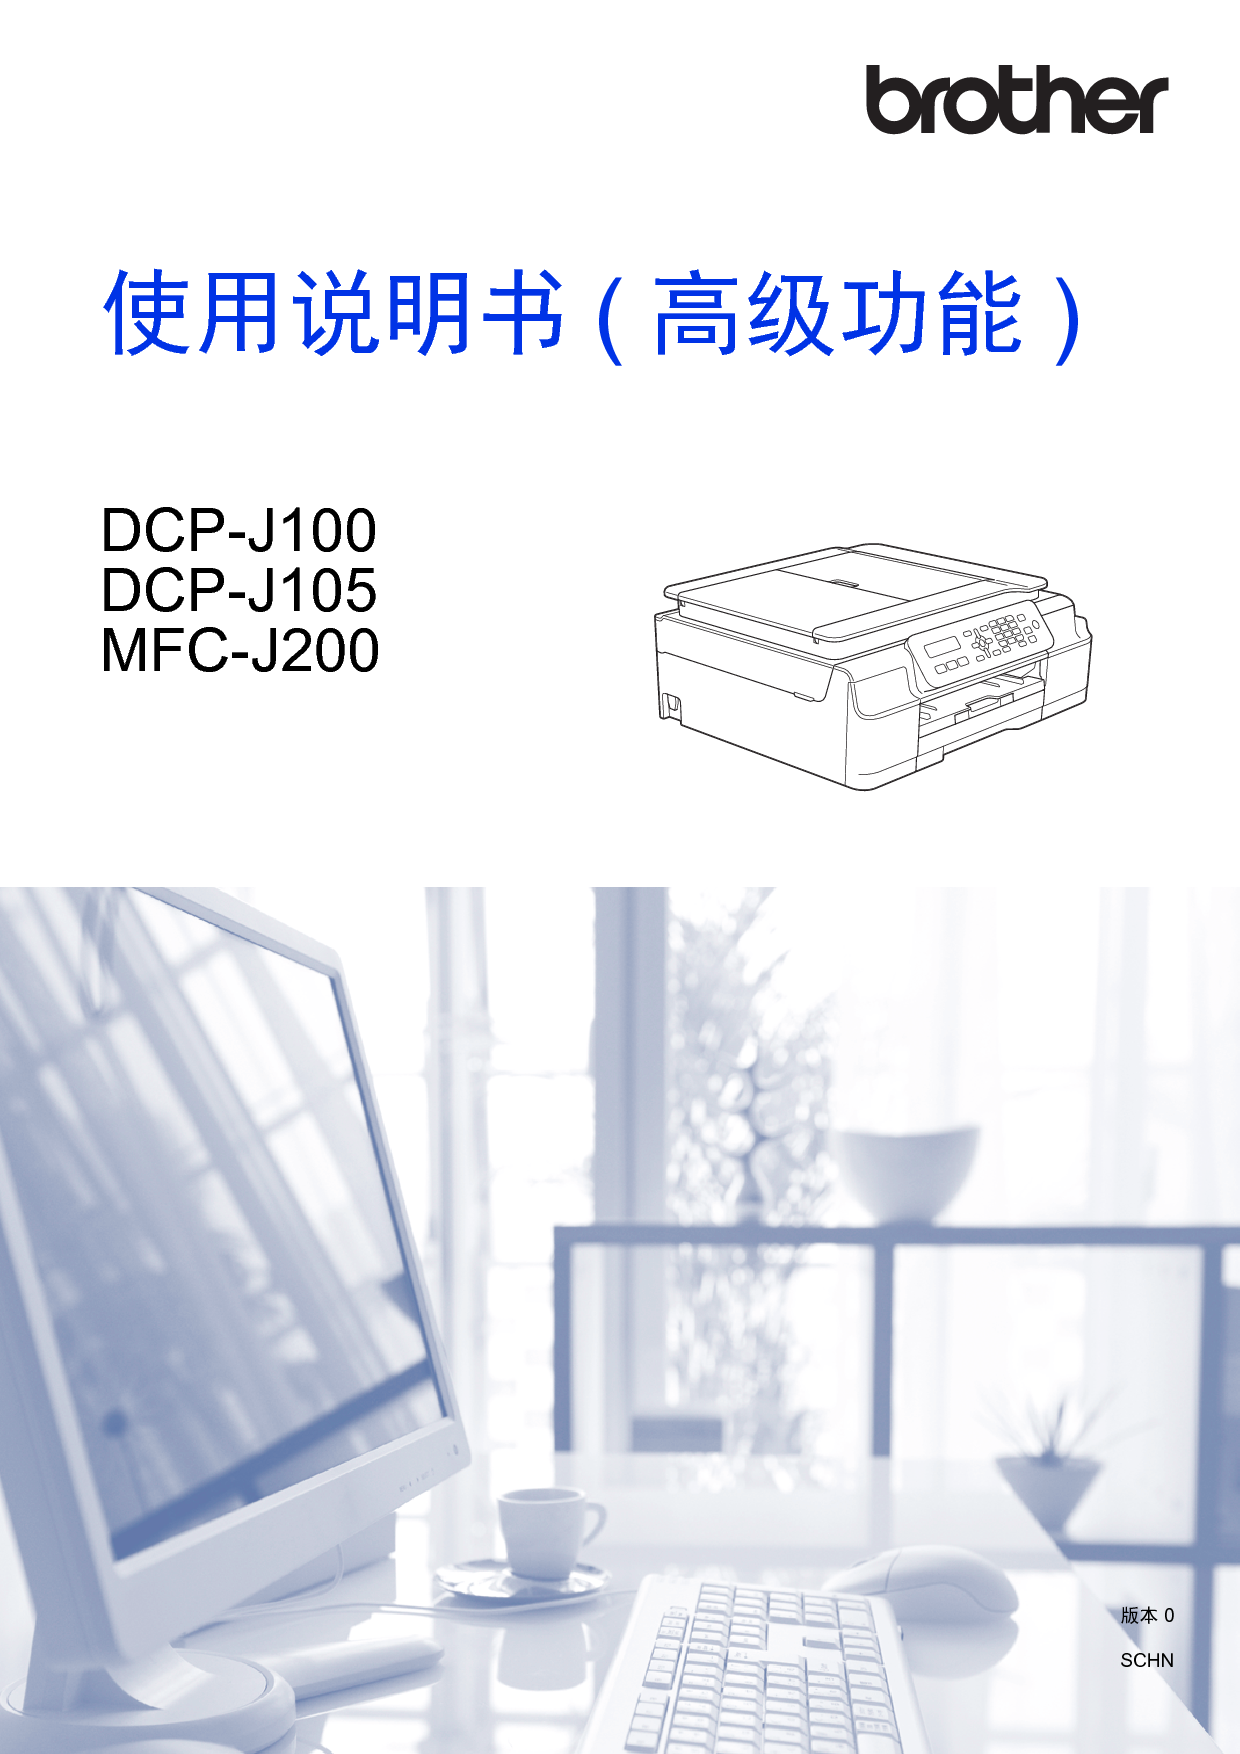 兄弟 Brother DCP-J100, MFC-J200 高级使用说明书 封面